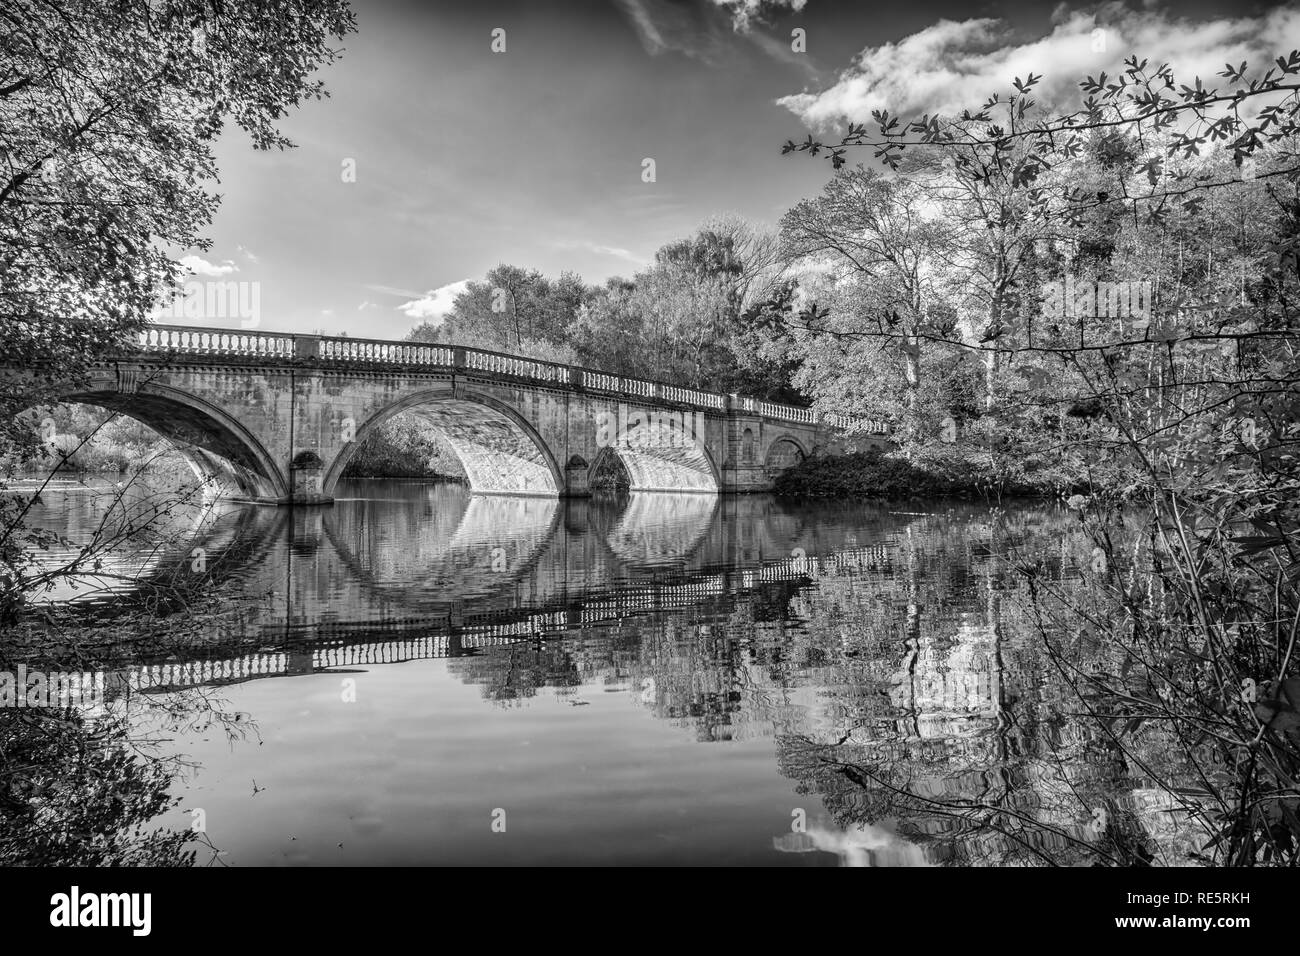 Questo è il retro humped ponte che si trova a Clumber Park nel Nottinghamshire. Questo ponte è un particolare punto di riferimento per il parco e noi Noitts f Foto Stock